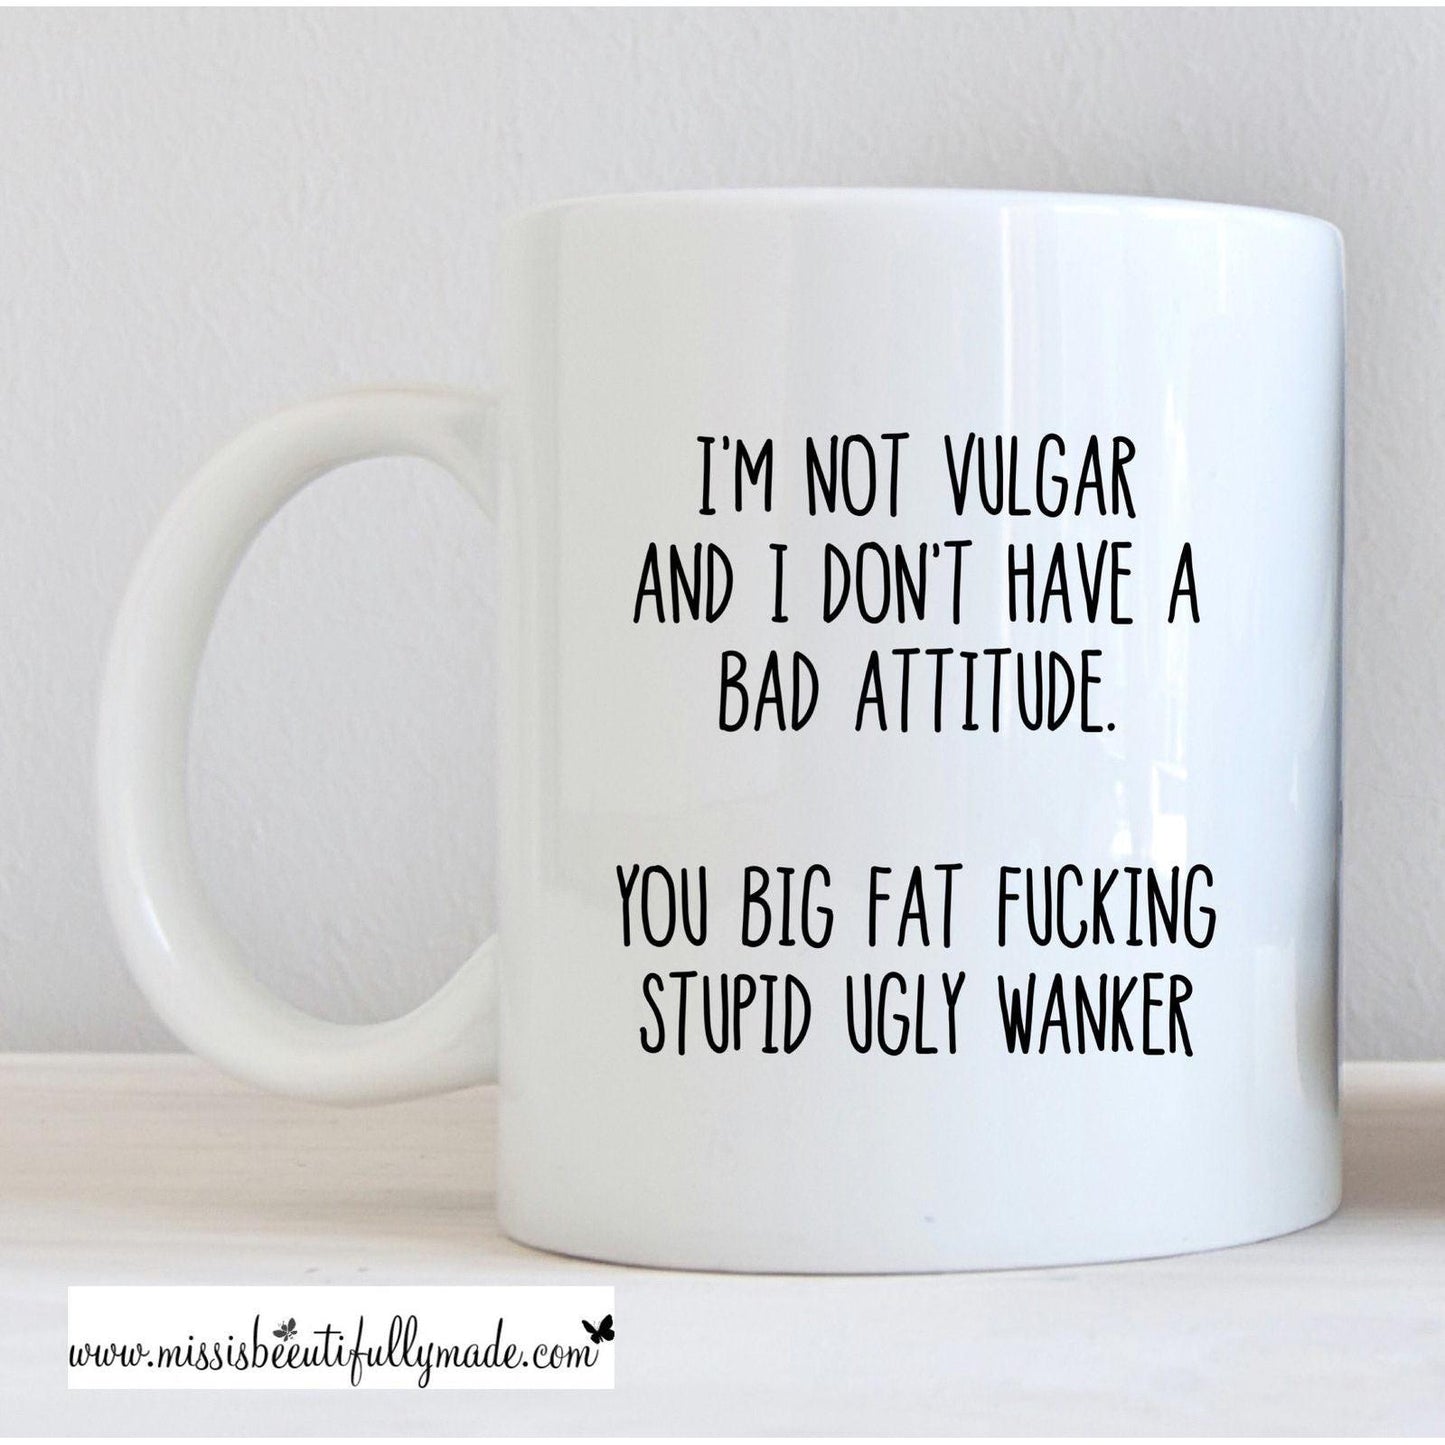 Mug - I’m not vulgar and don’t have a bad attitude